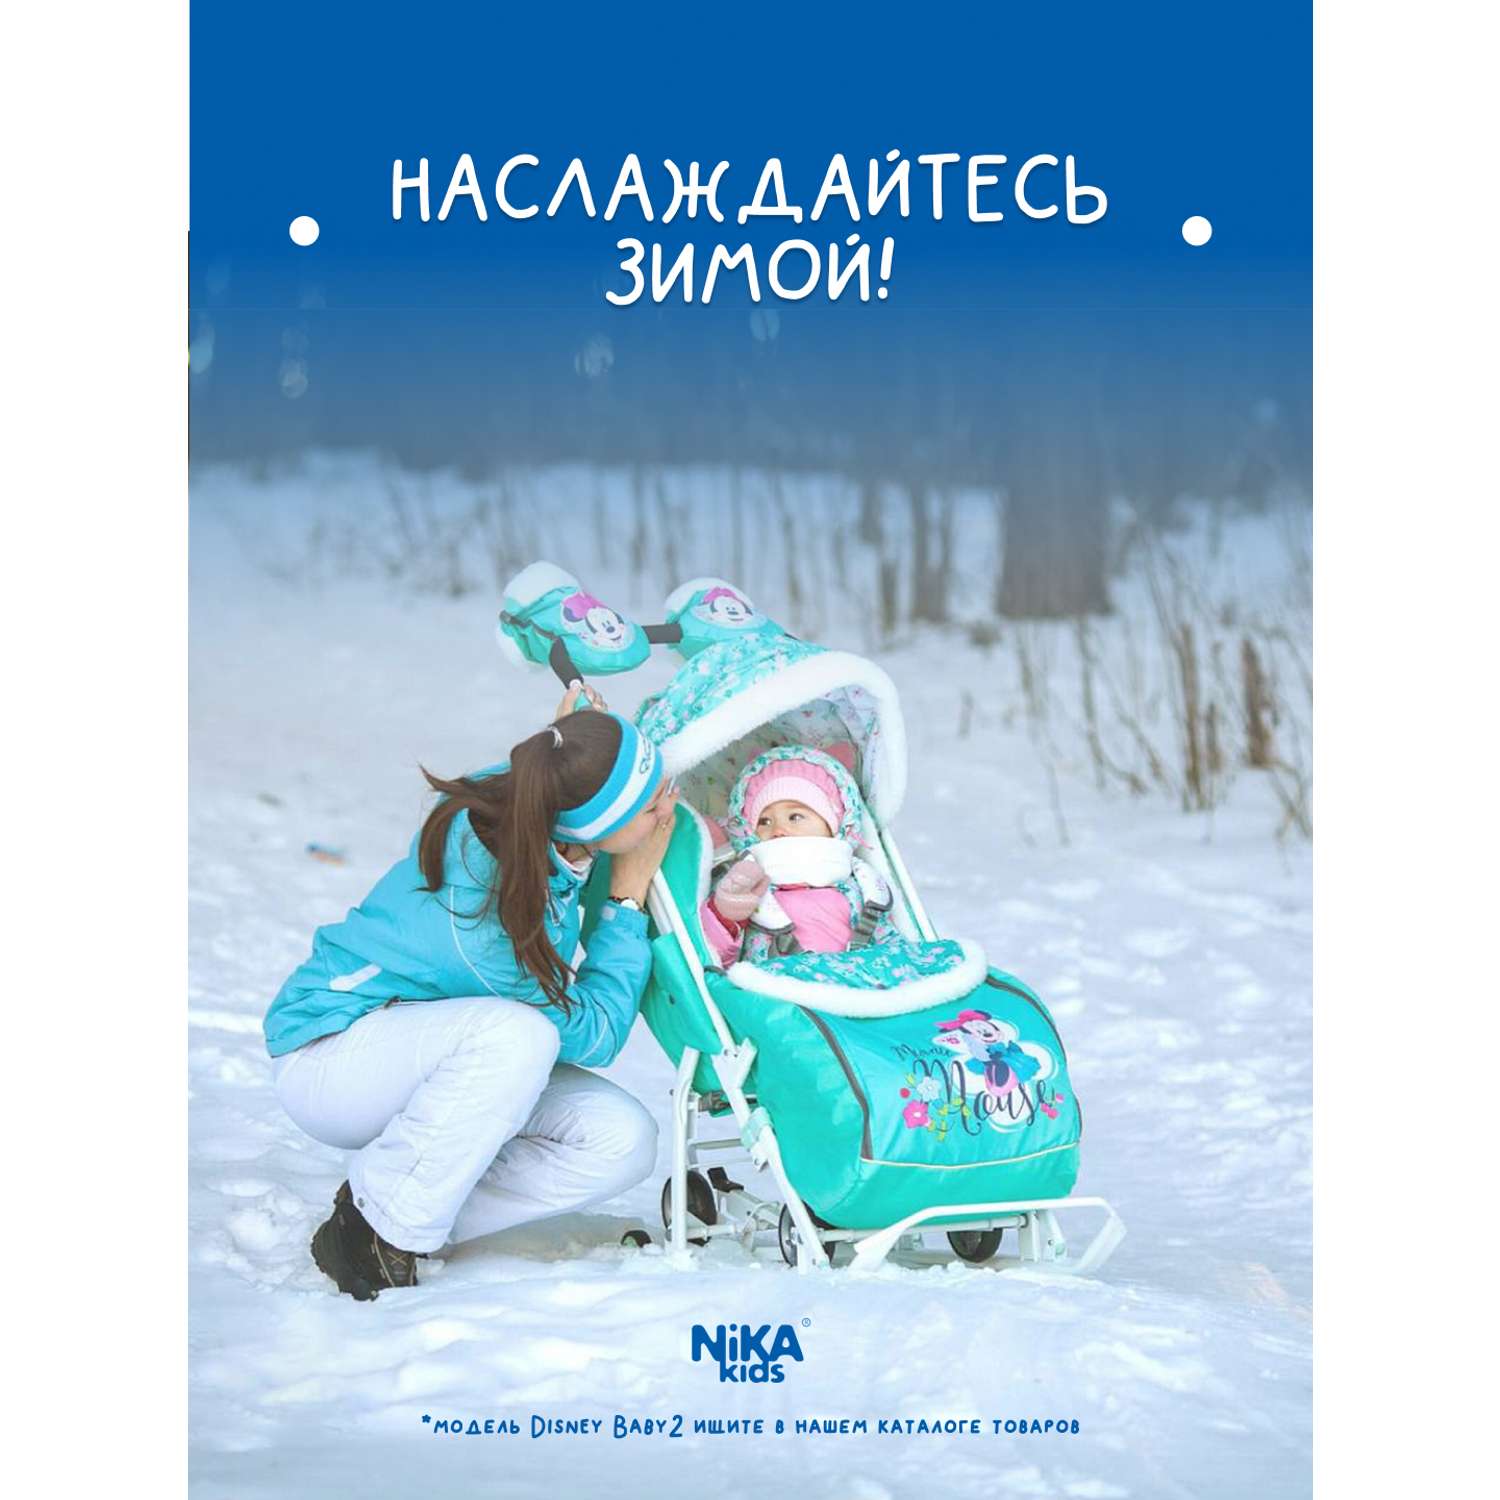 Зимние санки-коляска Nika kids прогулочные для детей - фото 6